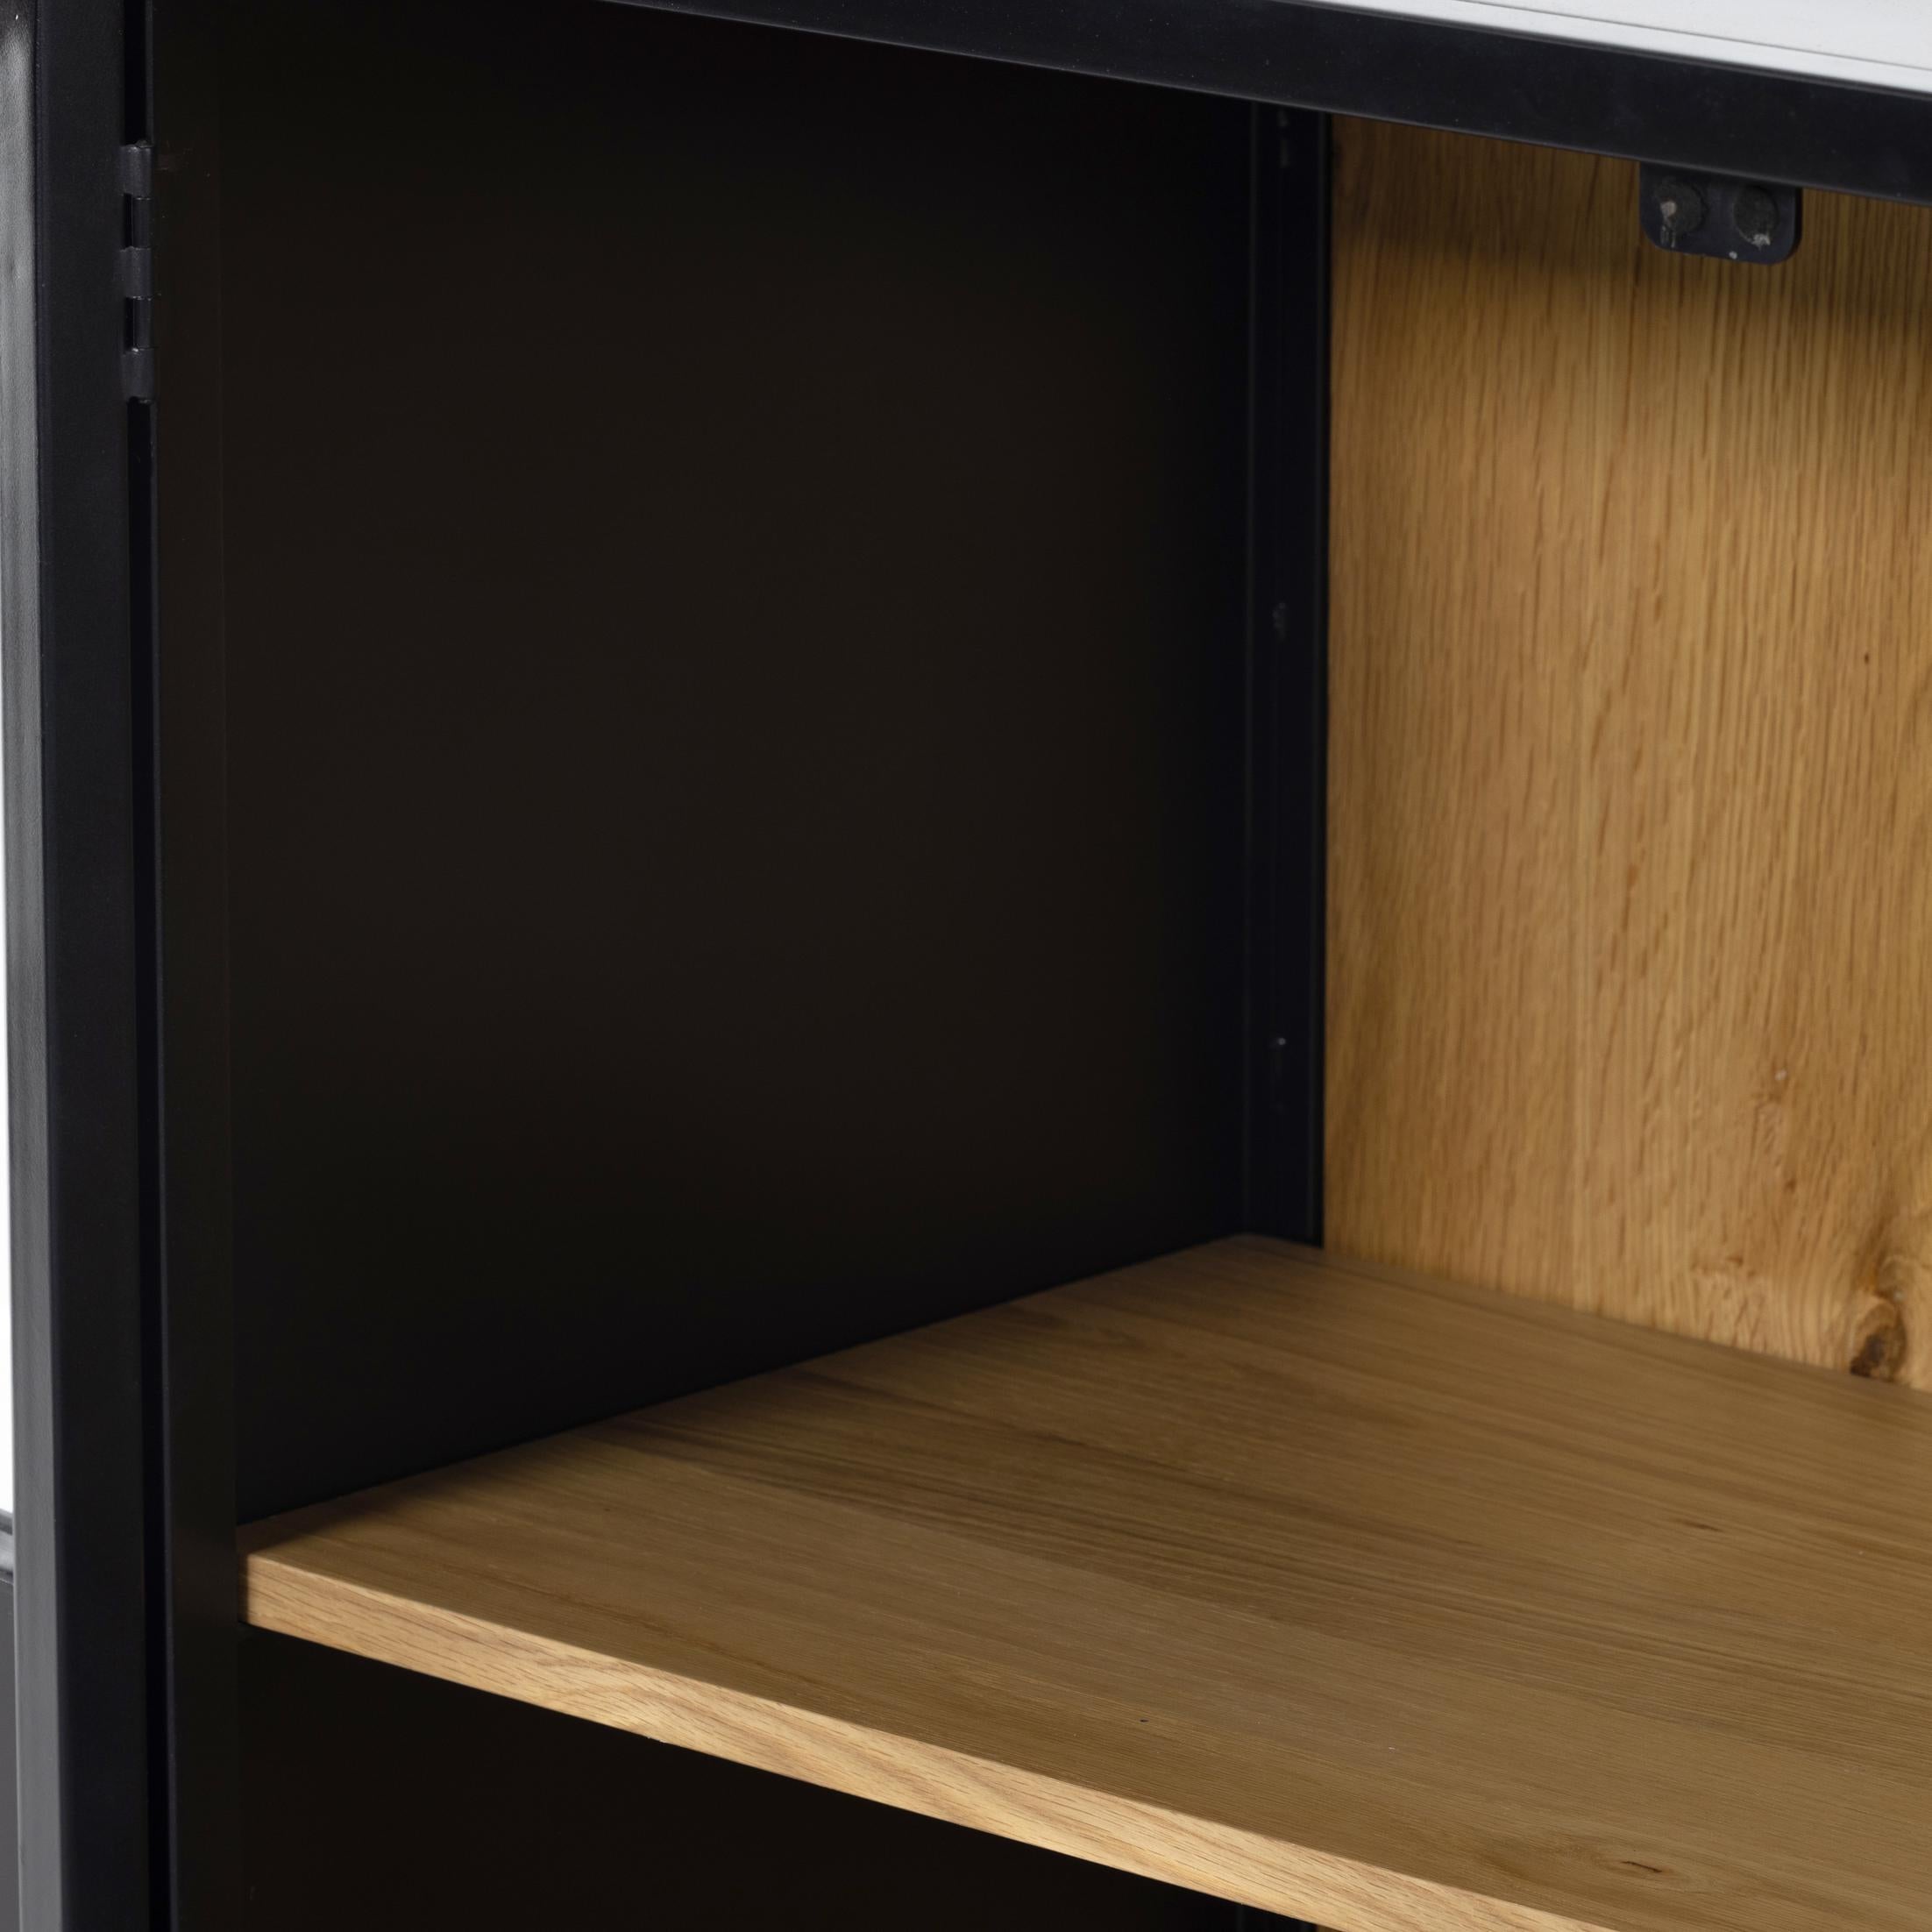 Levine Small Cabinet